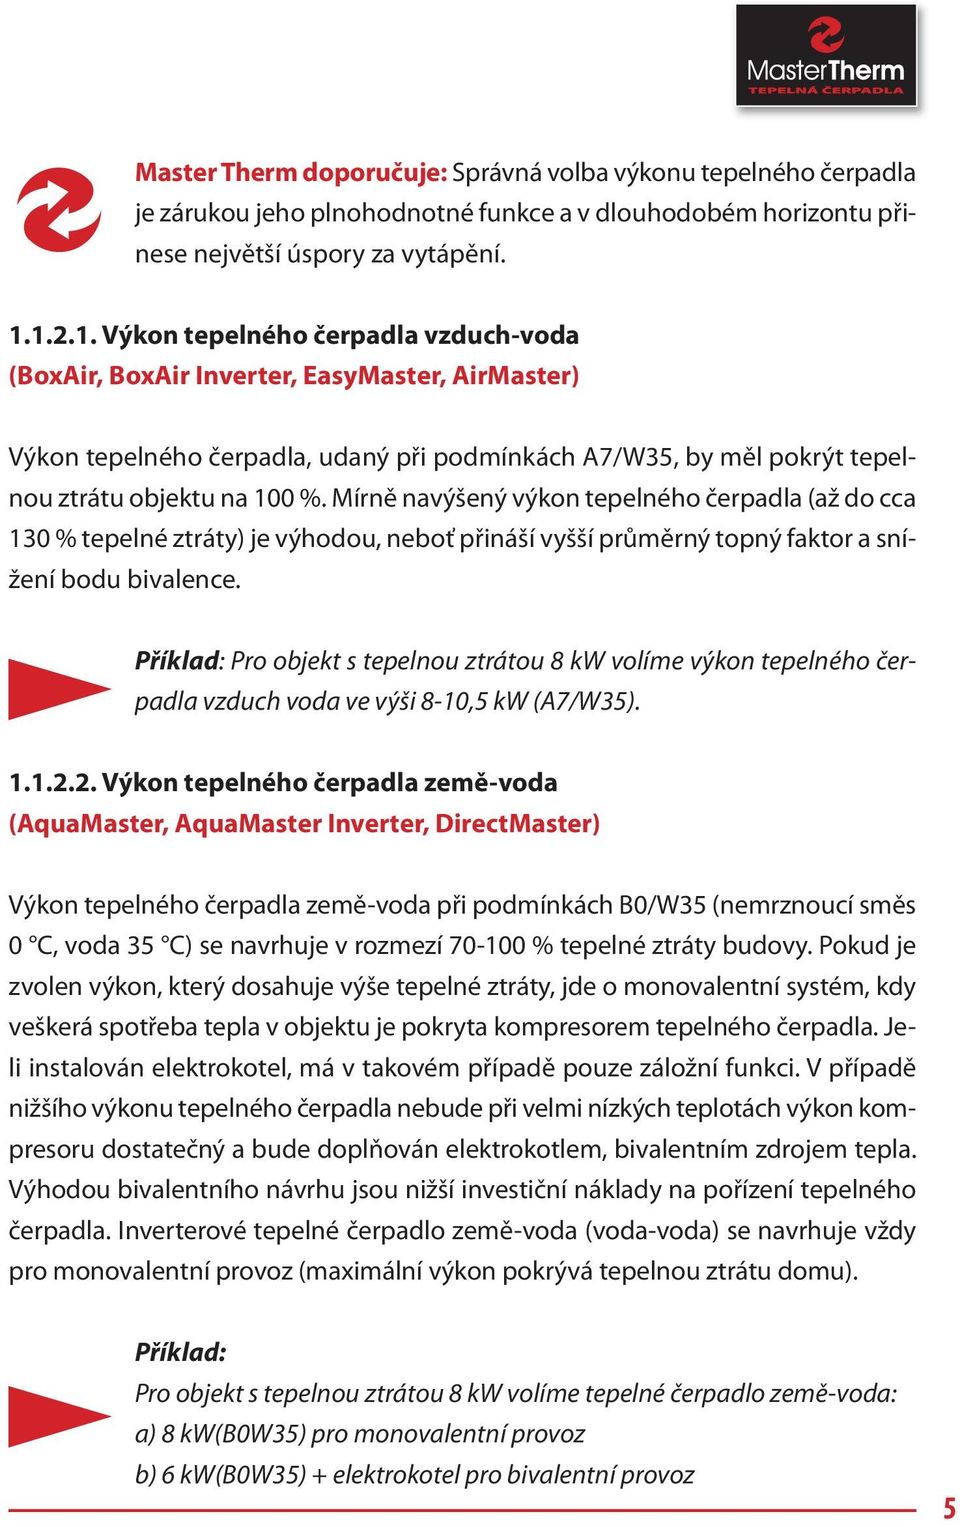 INFORMAČNÍ PŘÍRUČKA. TEPELNÁ ČERPADLA MasterTherm - PDF Free Download